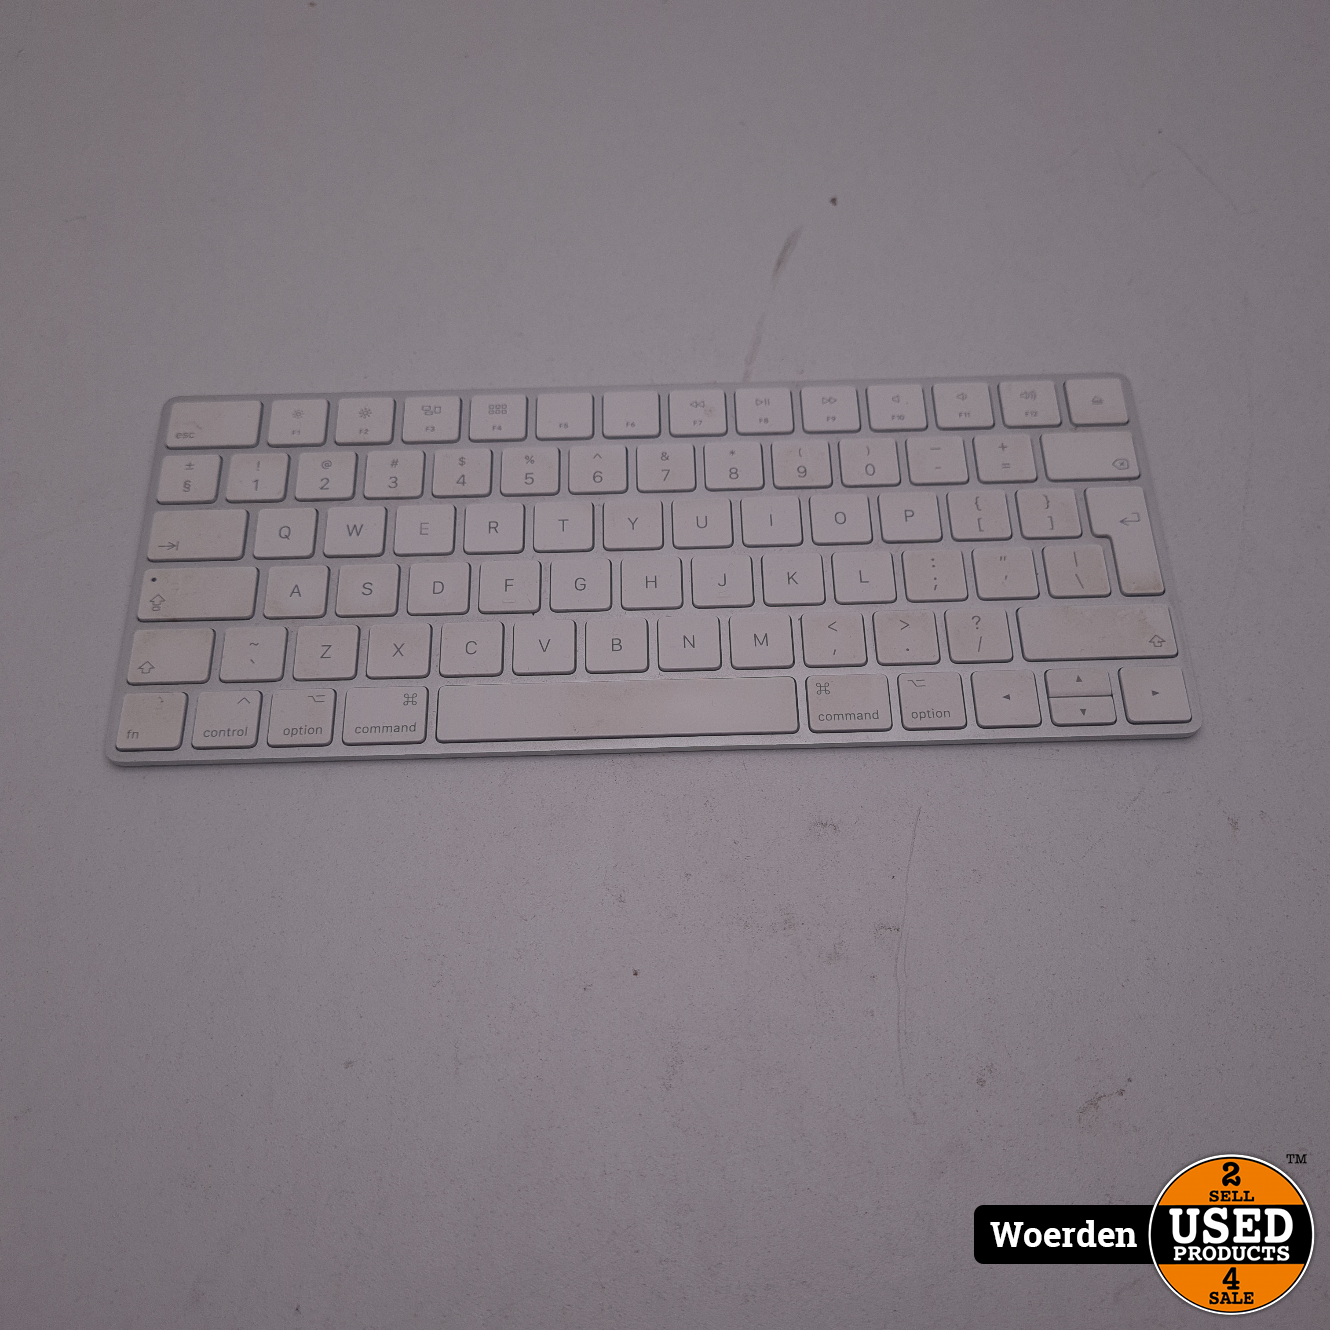 Auckland Besluit Monarch Apple Magic Keyboard Draadloos Toetsenbord met Garantie - Used Products  Woerden